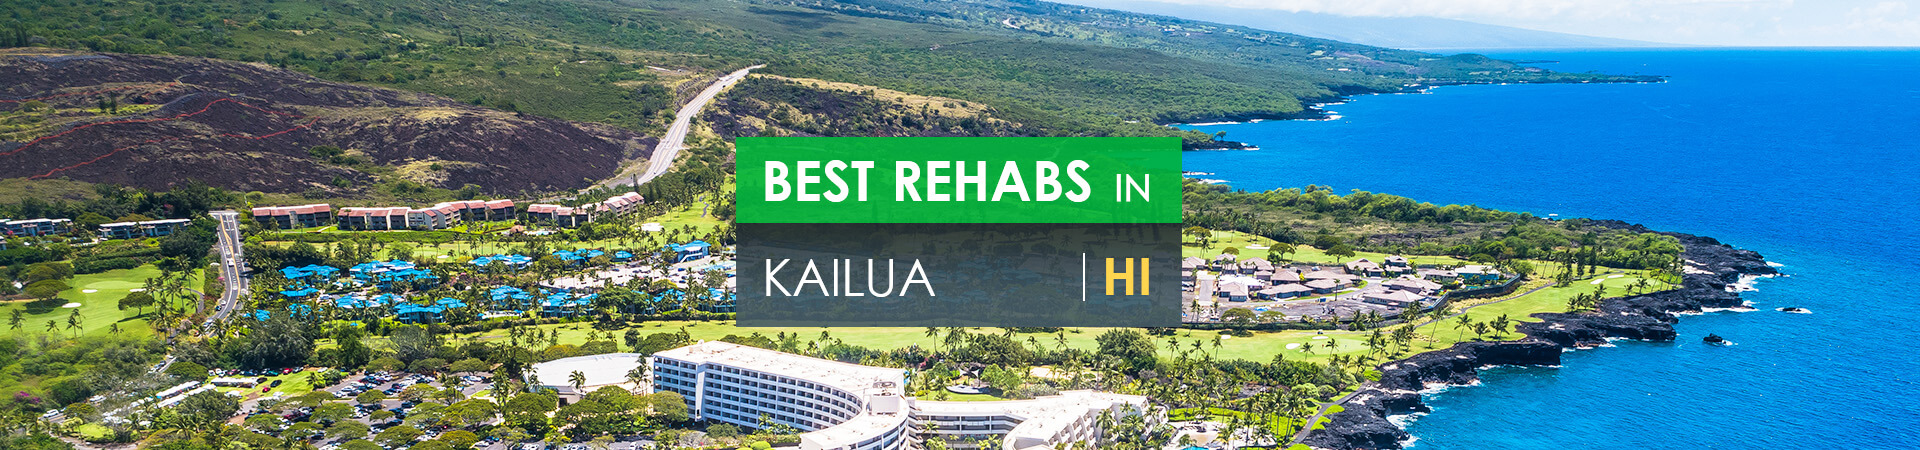 Best rehabs in Kailua, HI